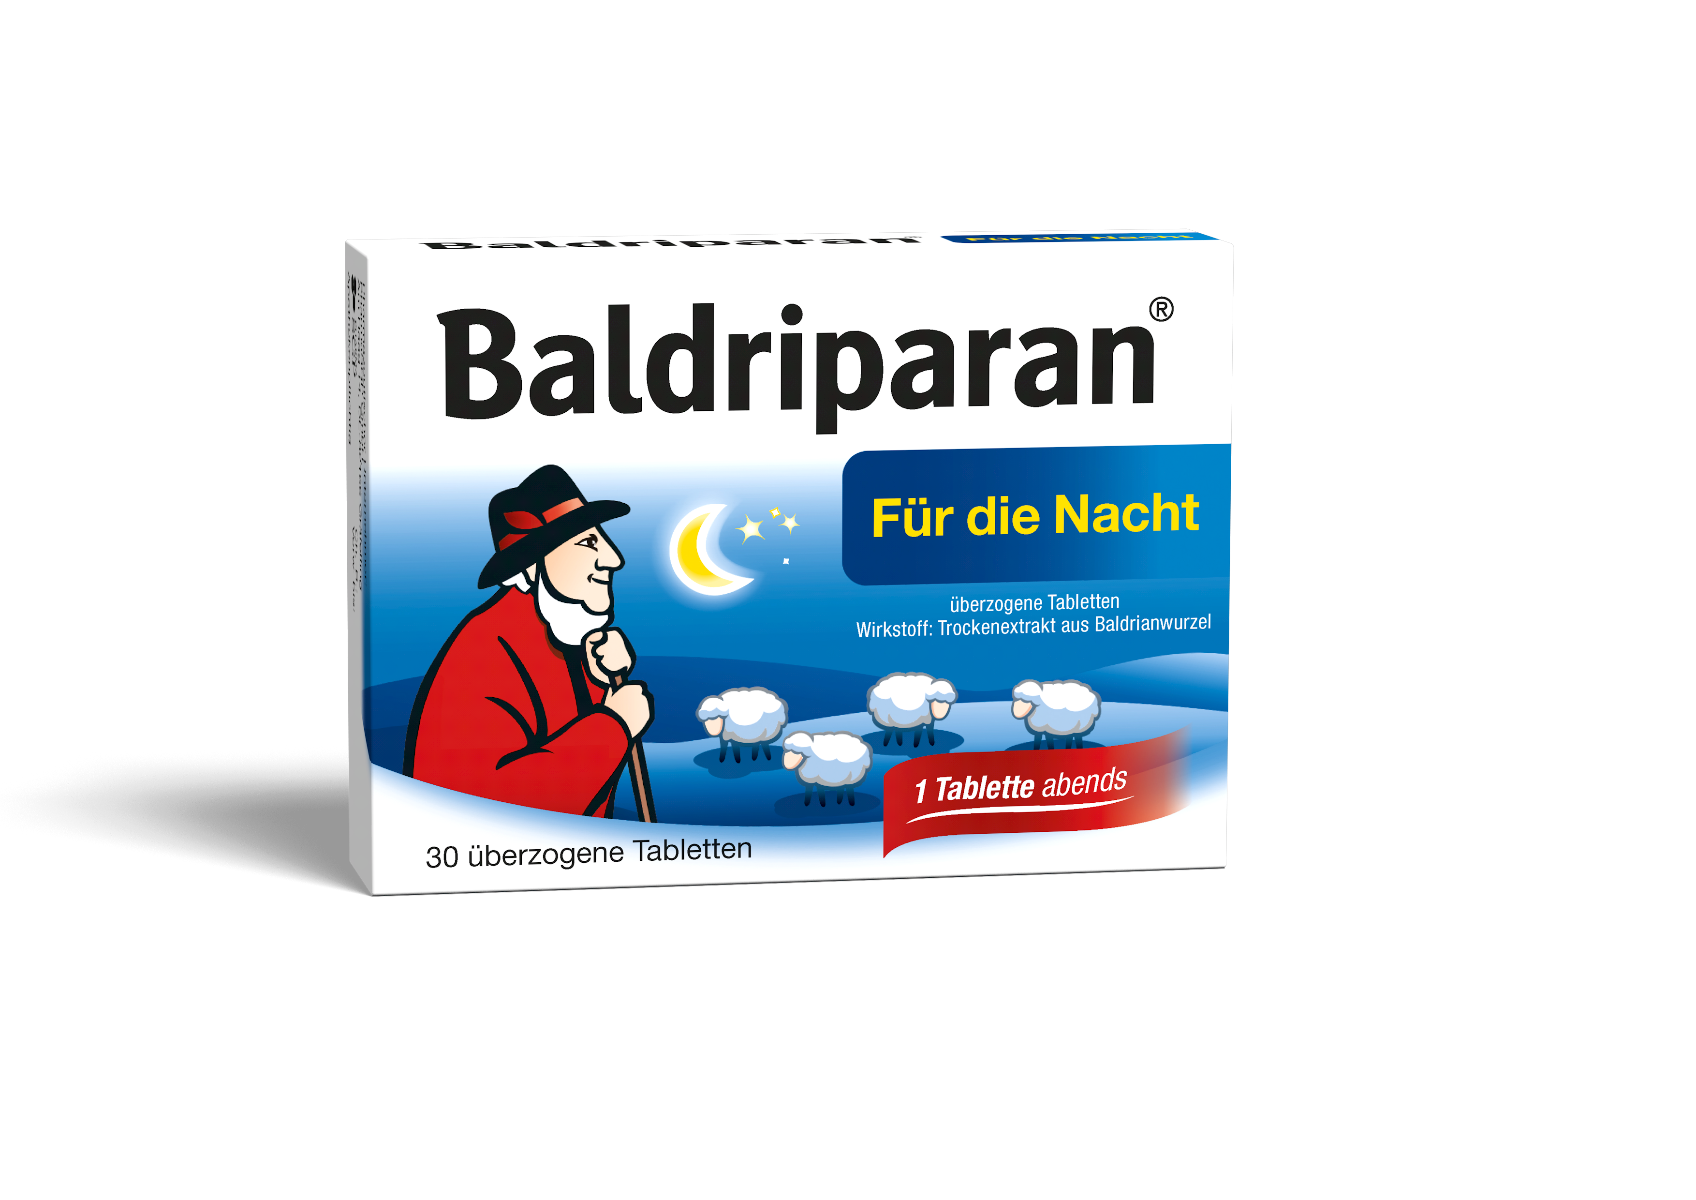 Abbildung Baldriparan für die Nacht - überzogene Tabletten